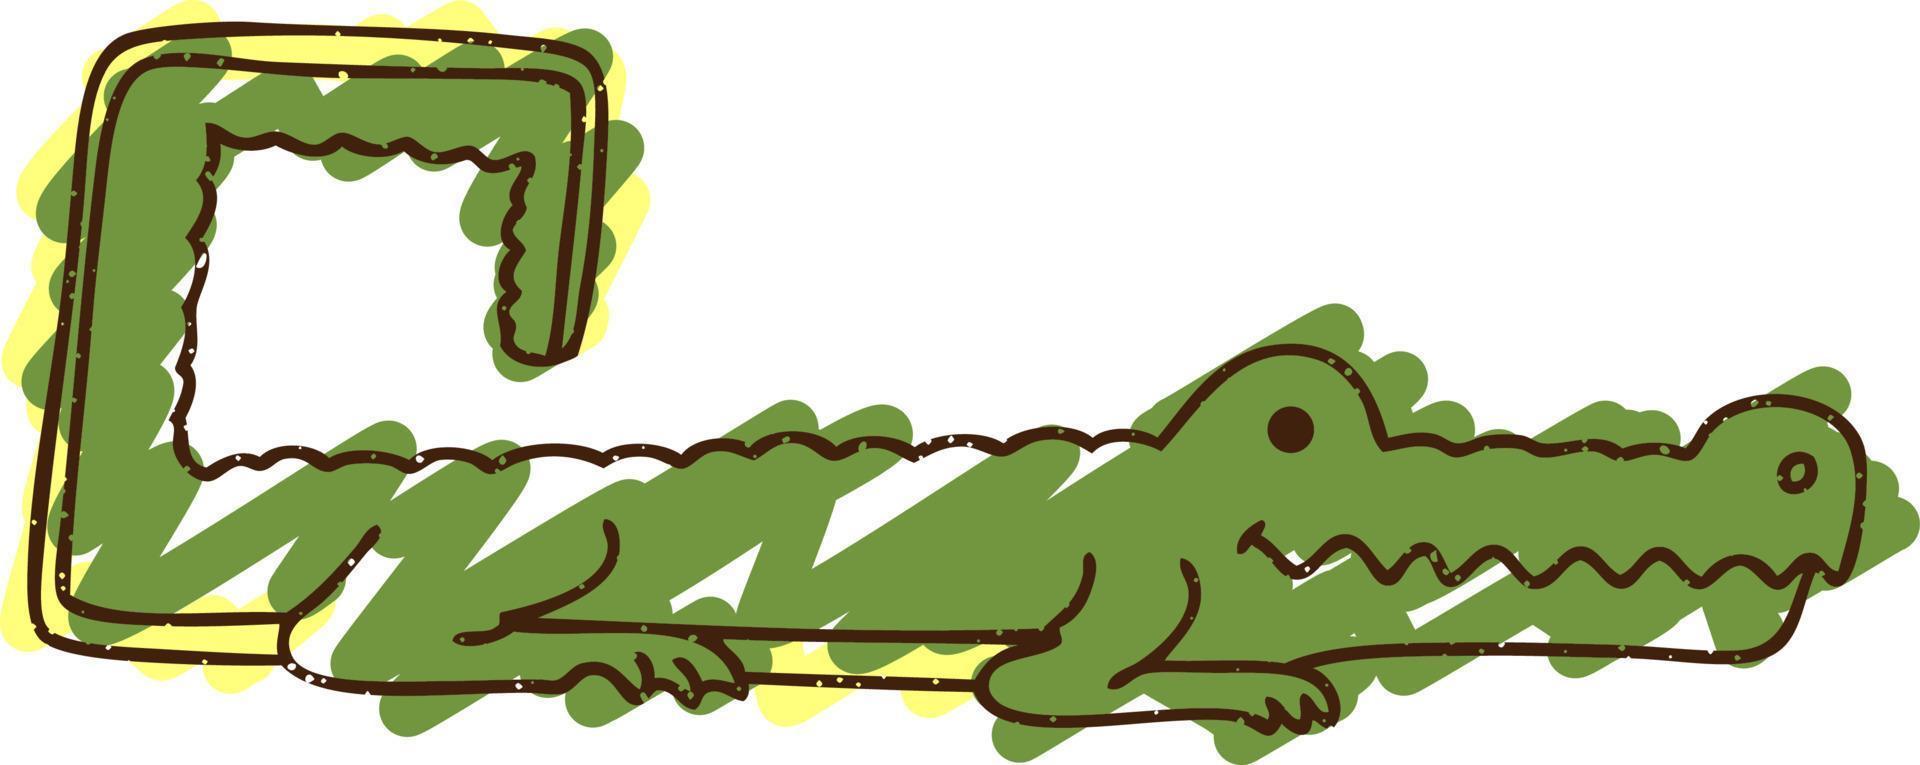 dessin à la craie alligator vecteur